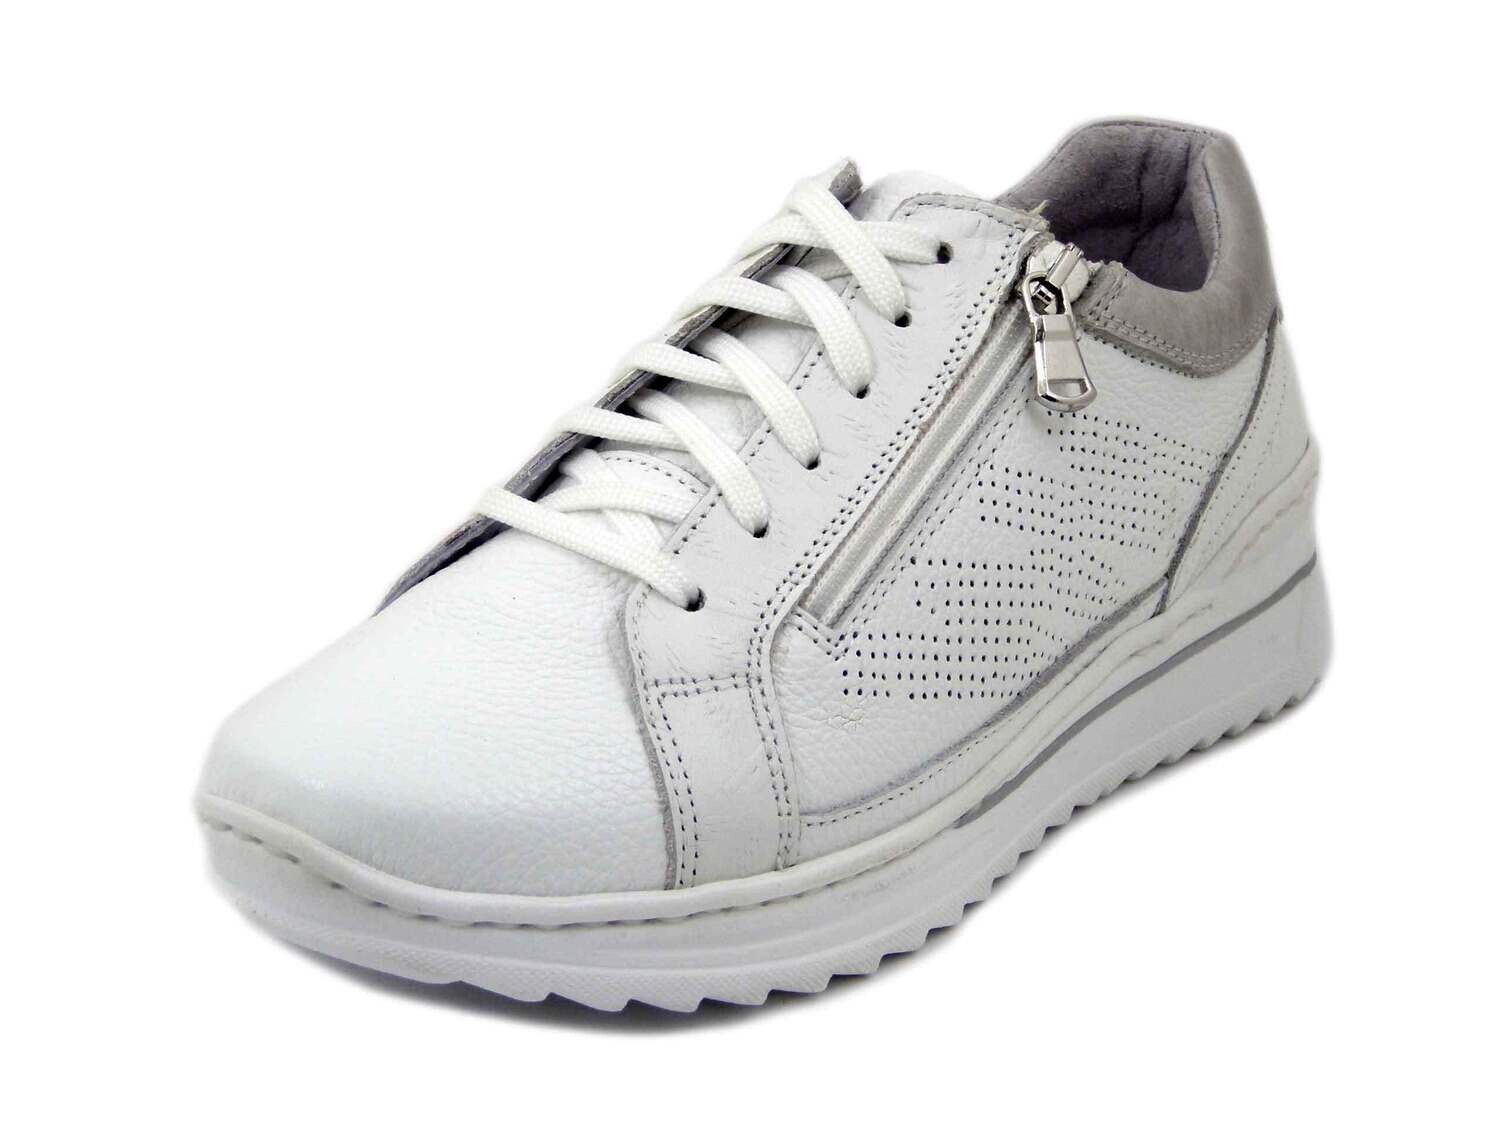 Stiledivita, Sneakers Donna in Pelle Bianco con Cerniera, Zeppa Bassa 4 cm,  Plantare Estraibile, Pianta Comoda,